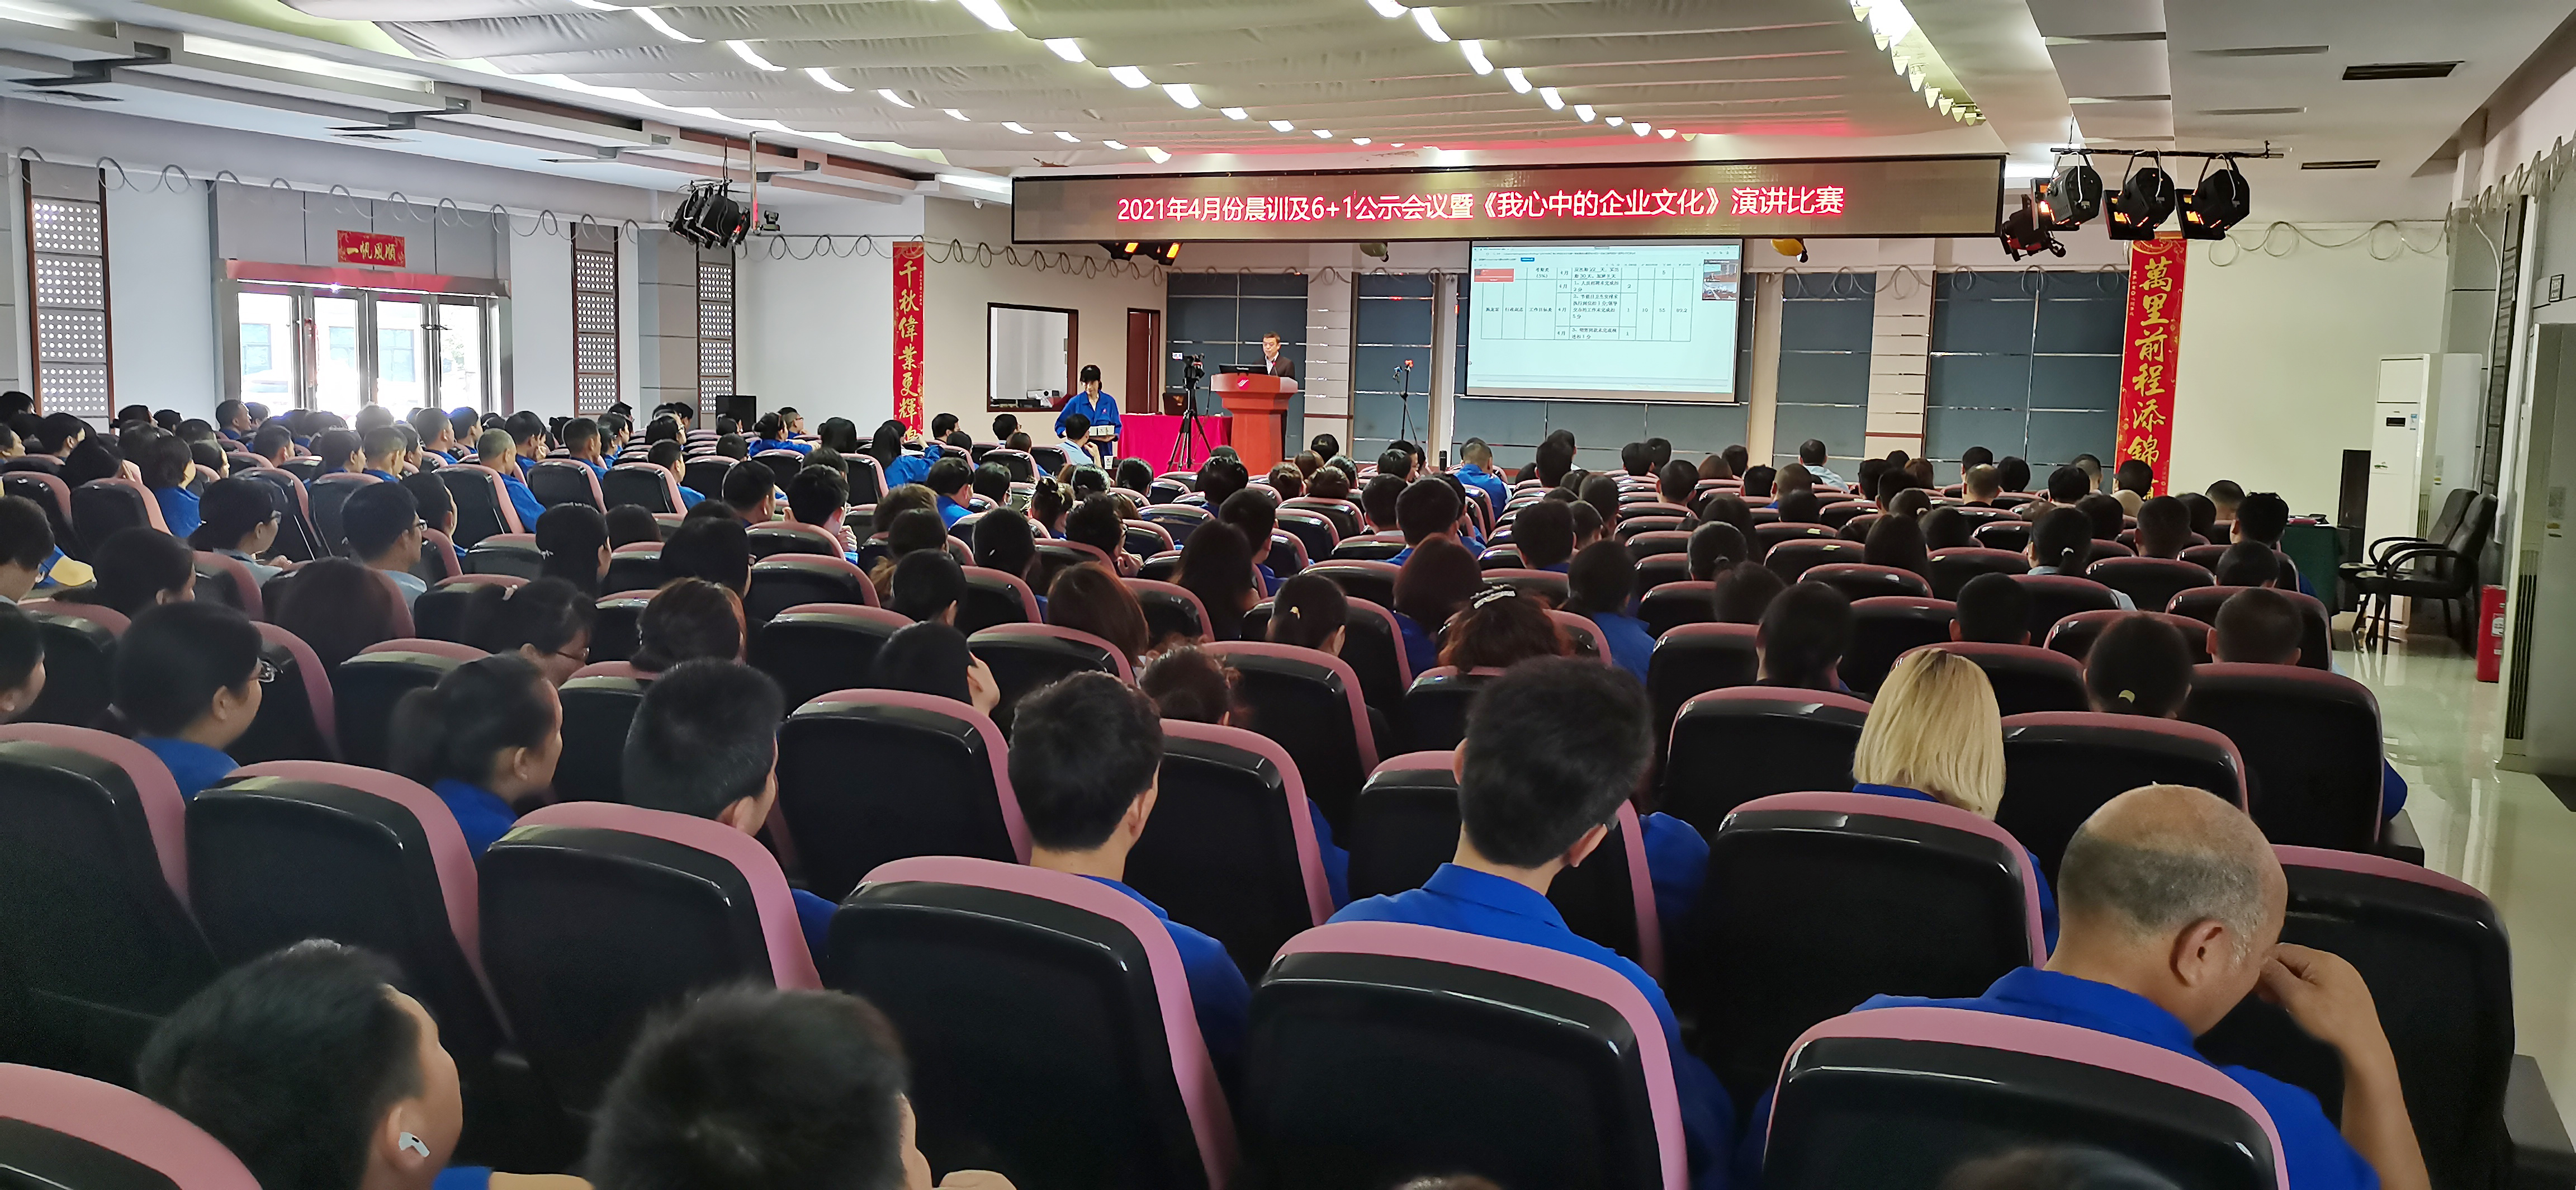 新泉新林舉辦“我心中的企業文化”演講比賽——“企業文化學習年”系列活動報道之五 